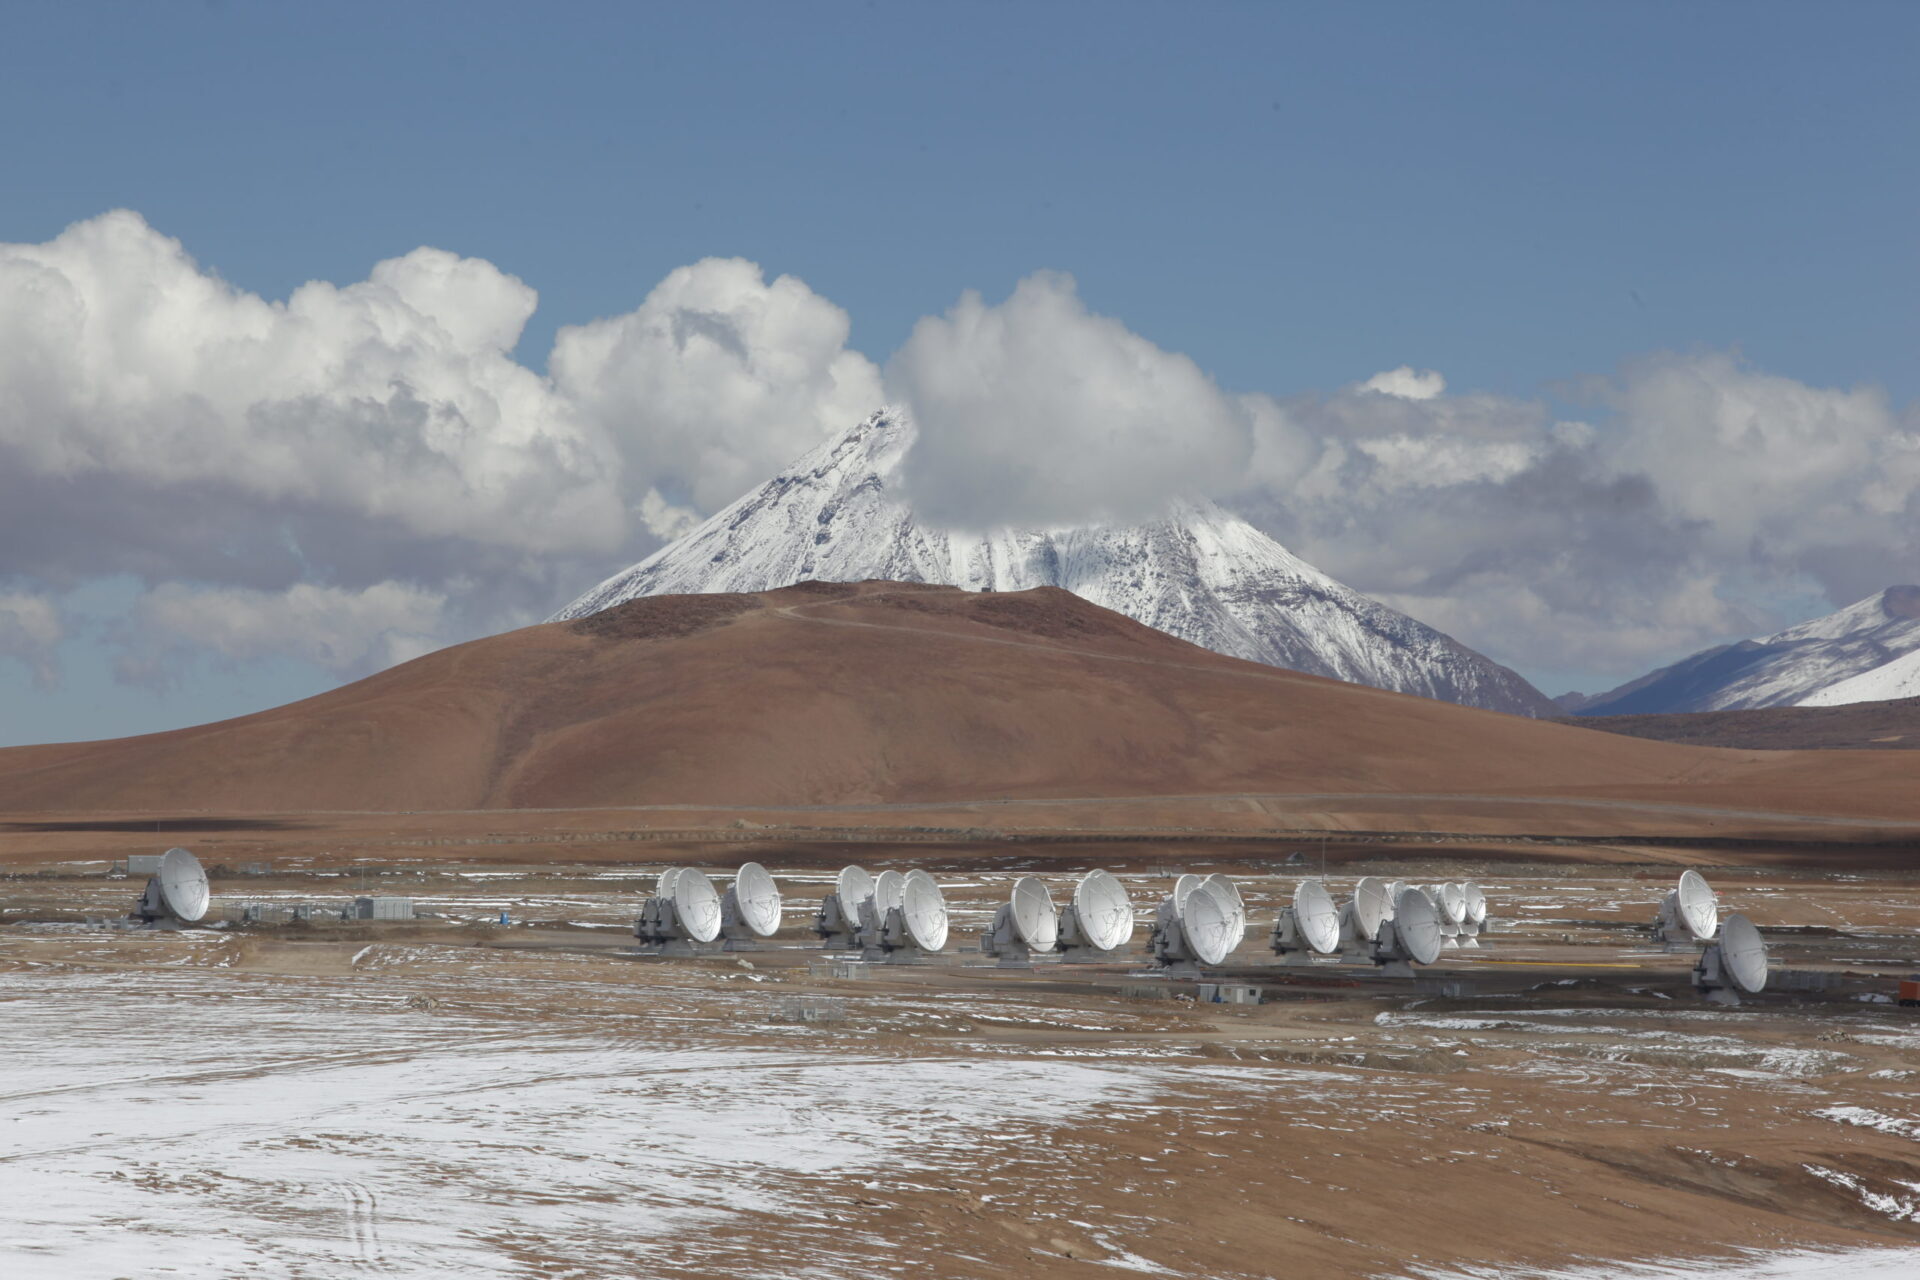 View of the ALMA antennas